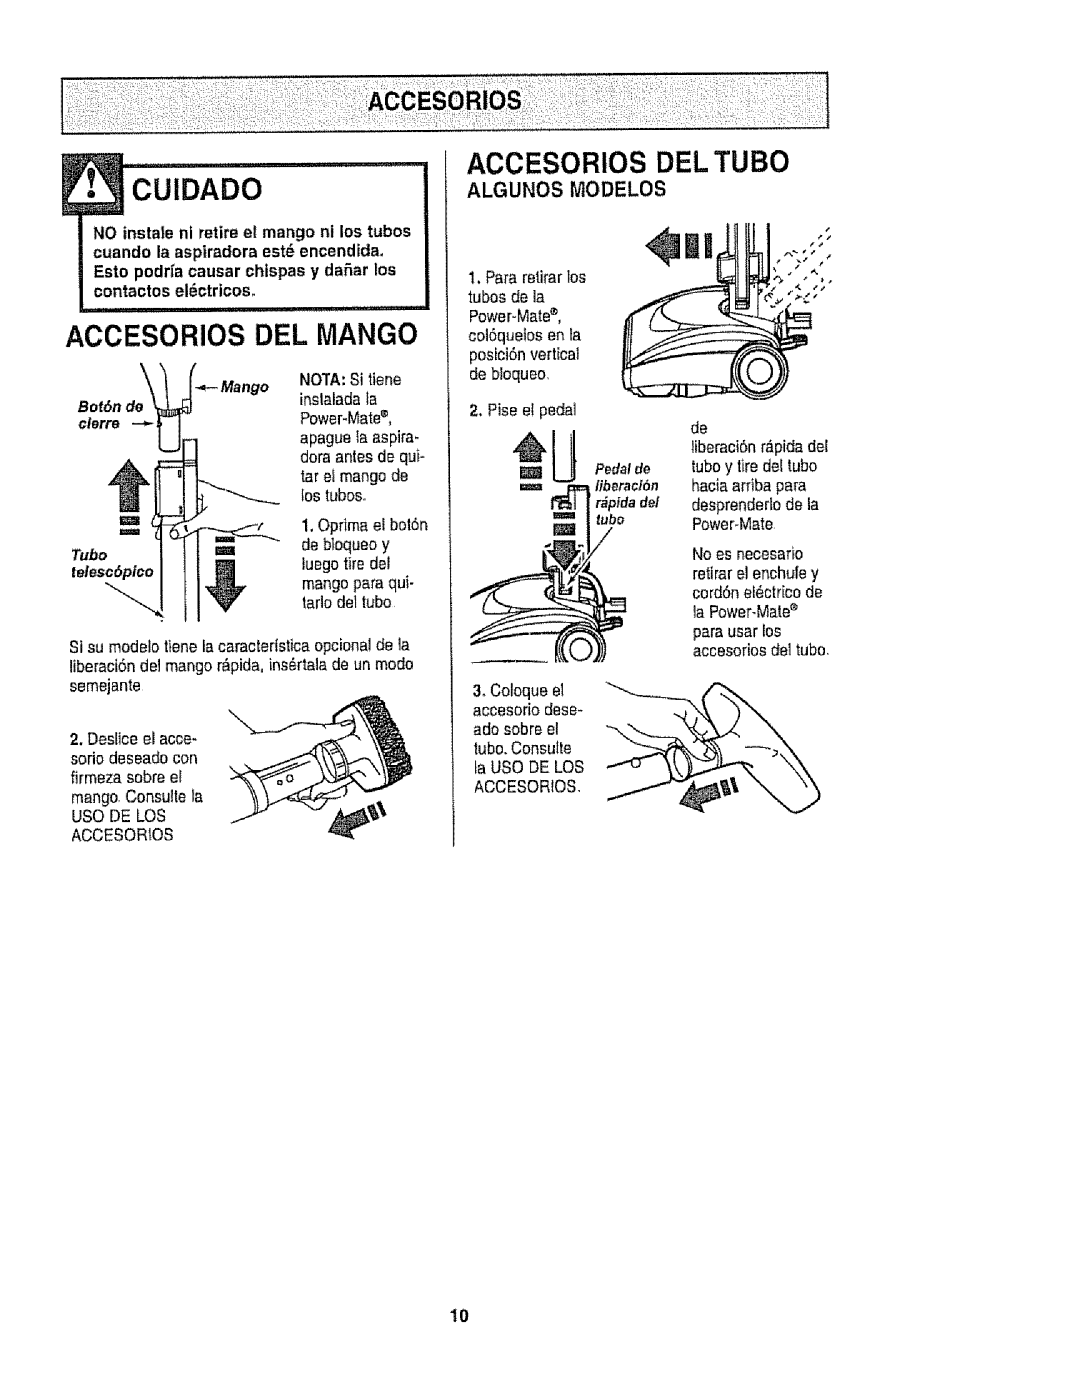 Kenmore 116.22813, 116.22812 Accesorios Del Mango, Accesorios Del Tubo, Algunos Modelos, Tubo=_ telesc6pico ___, #jl__ Ib 